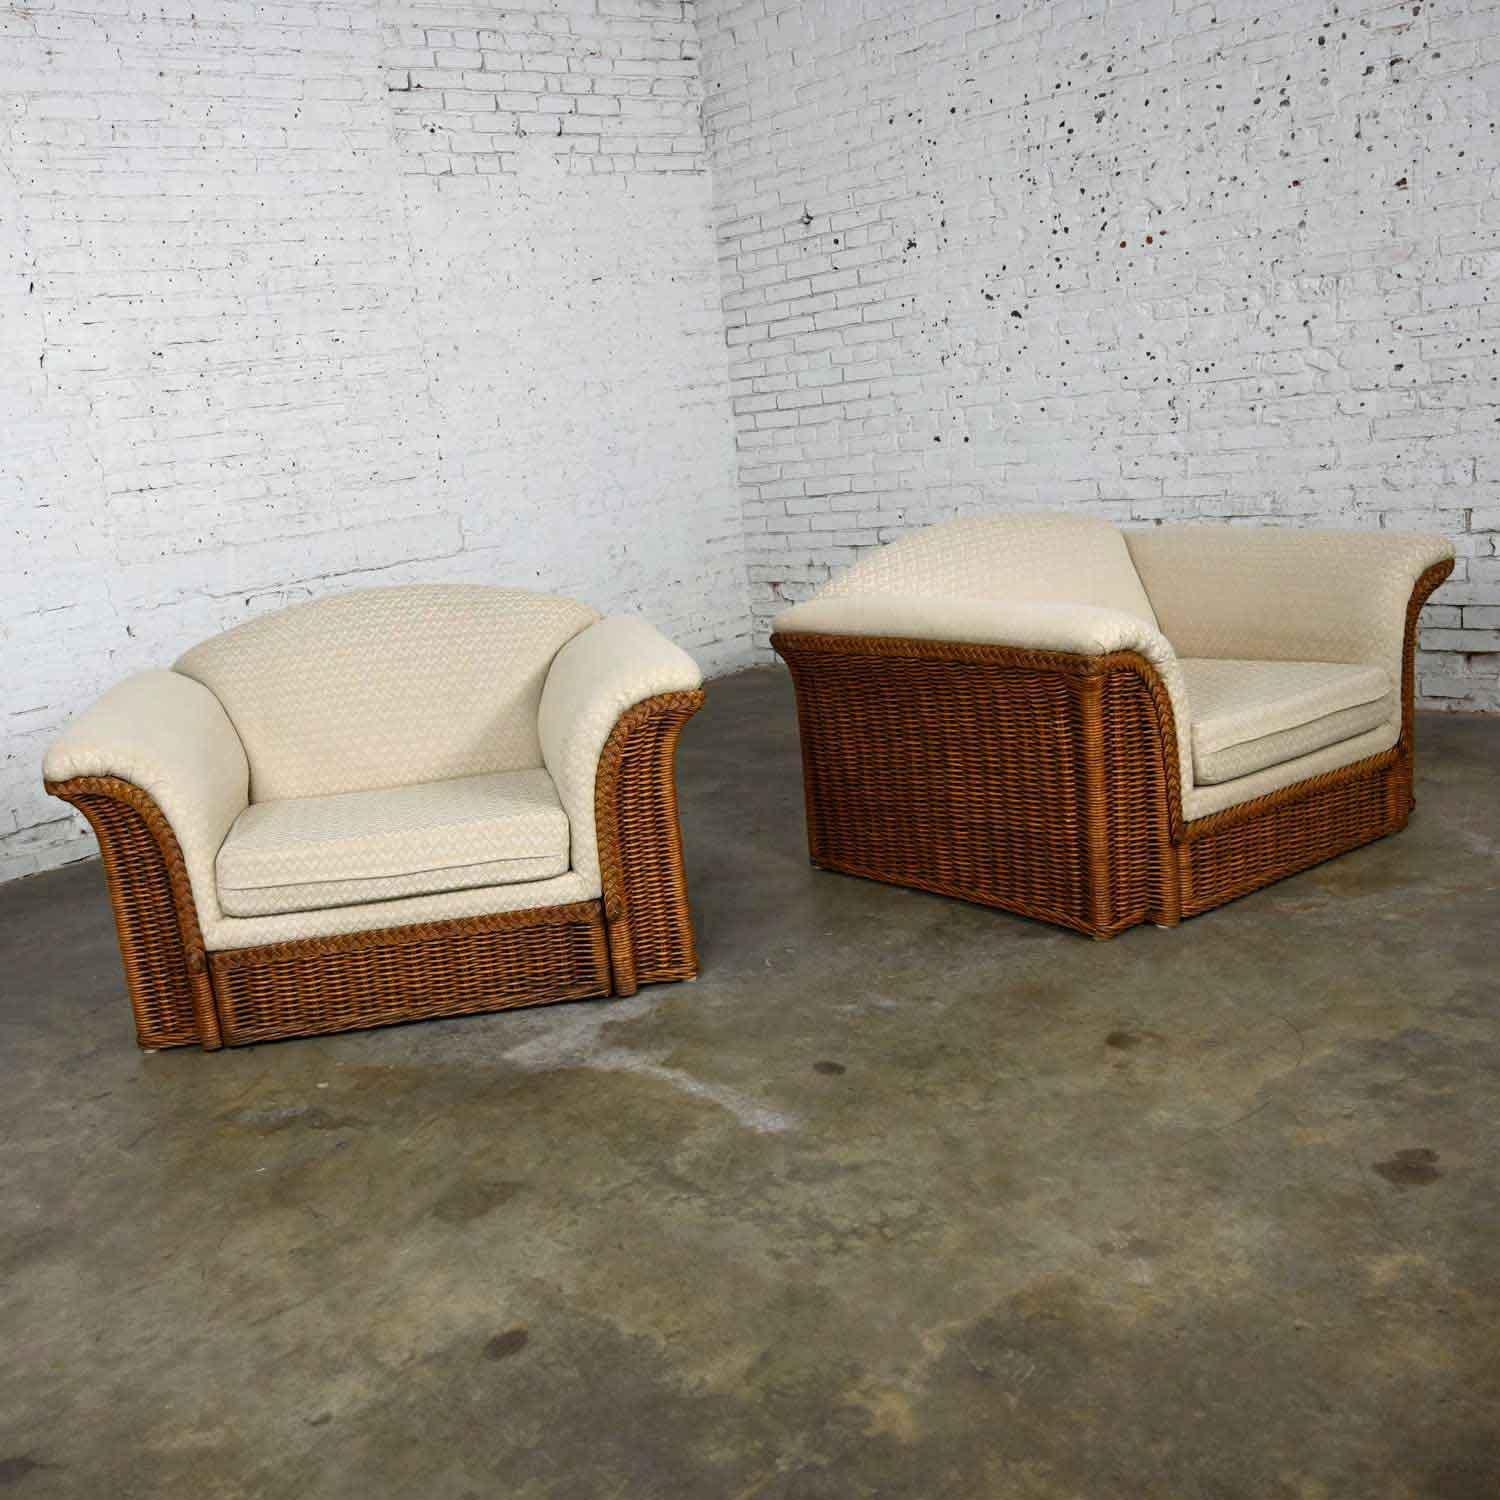 Fabuleuse paire de chaises longues en rotin surdimensionnées portant leur revêtement d'origine blanc cassé dans le style de Michael Taylor. Très bon état, tout en gardant à l'esprit qu'il s'agit d'un produit vintage et non pas neuf, qui présente